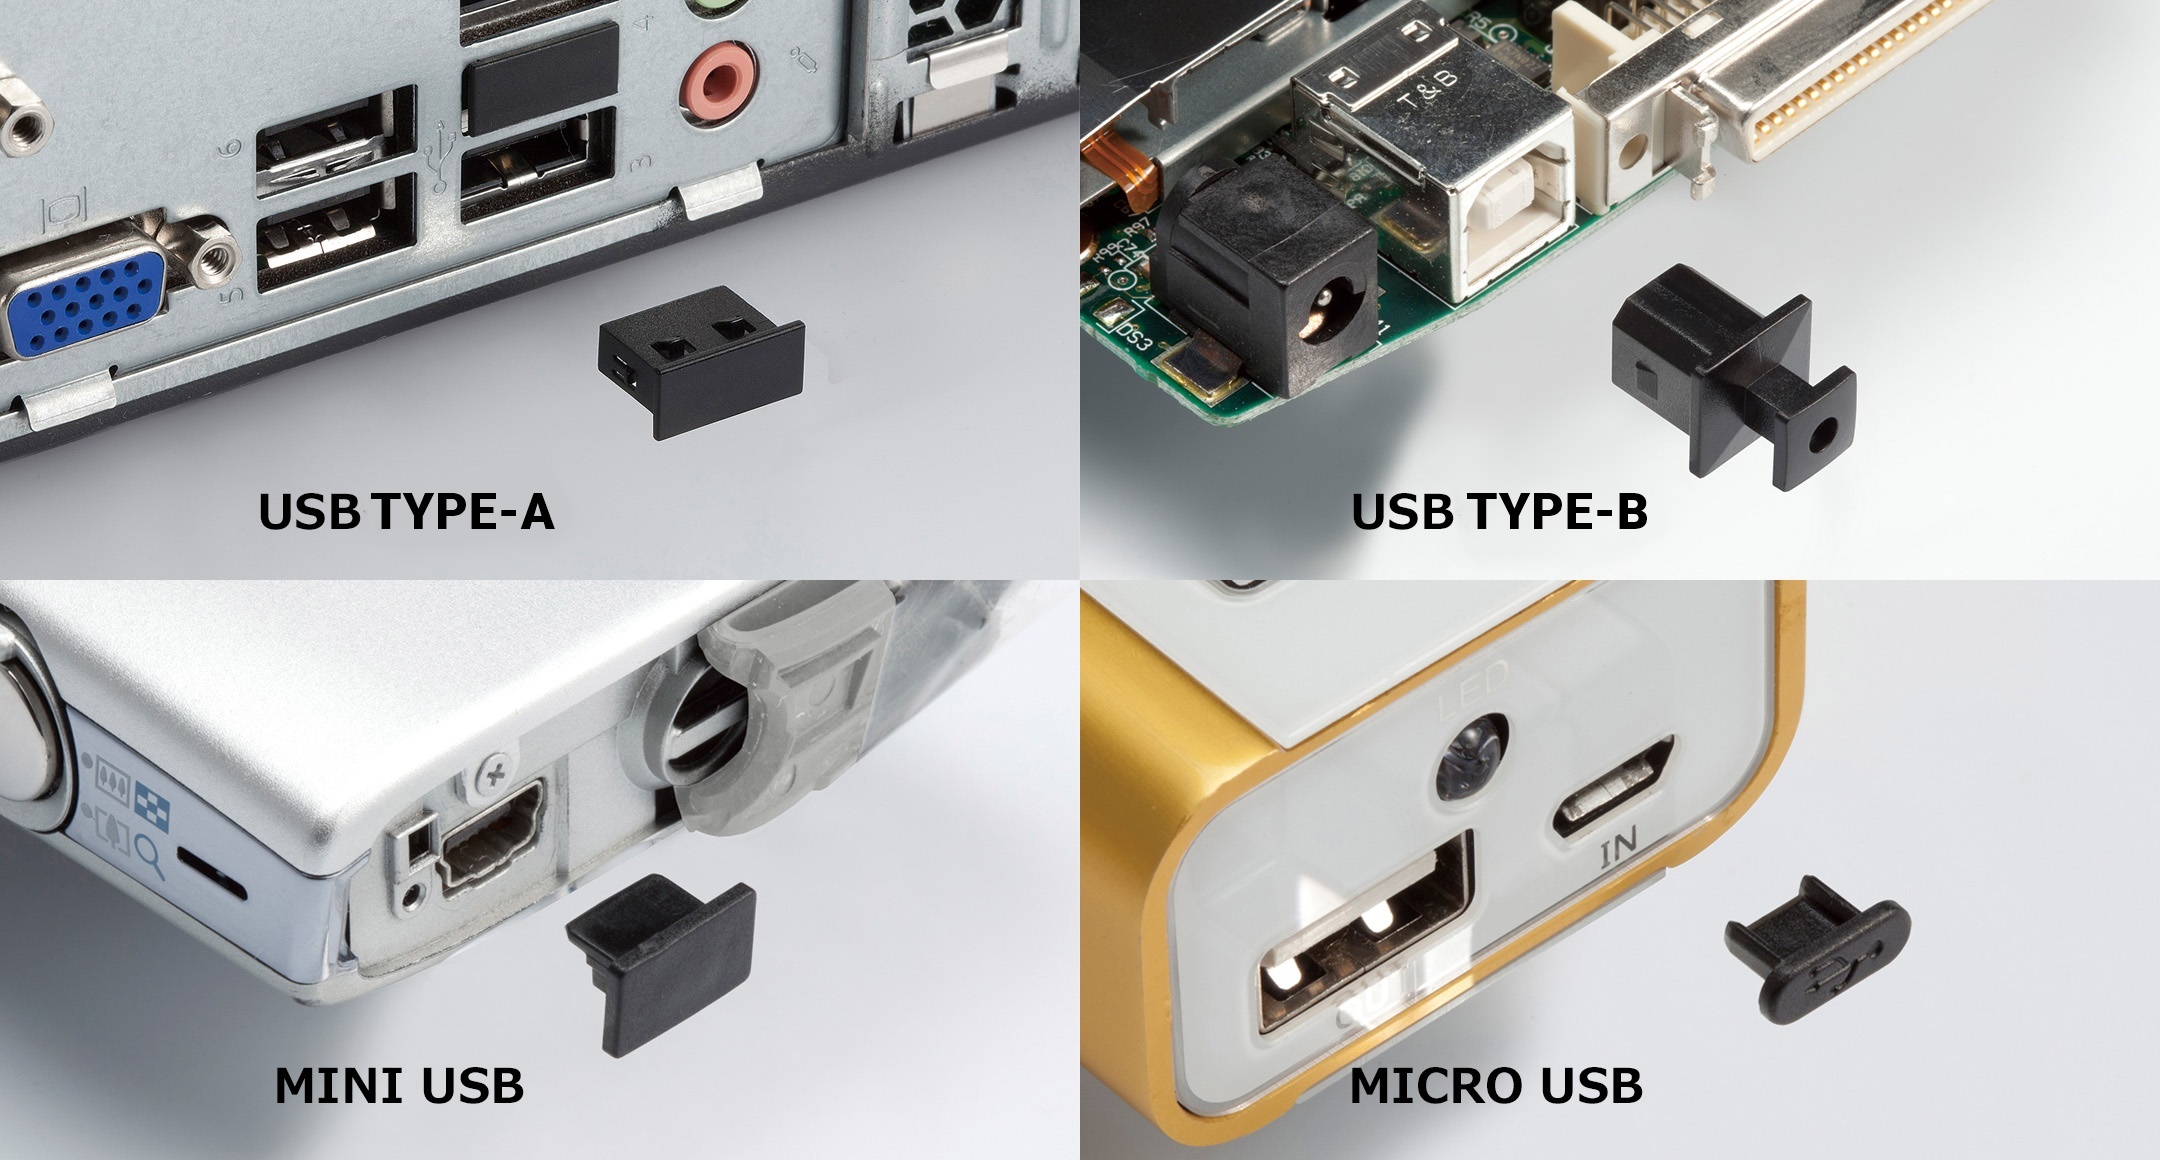 USB DUSTPROOF COVER - USBC series1